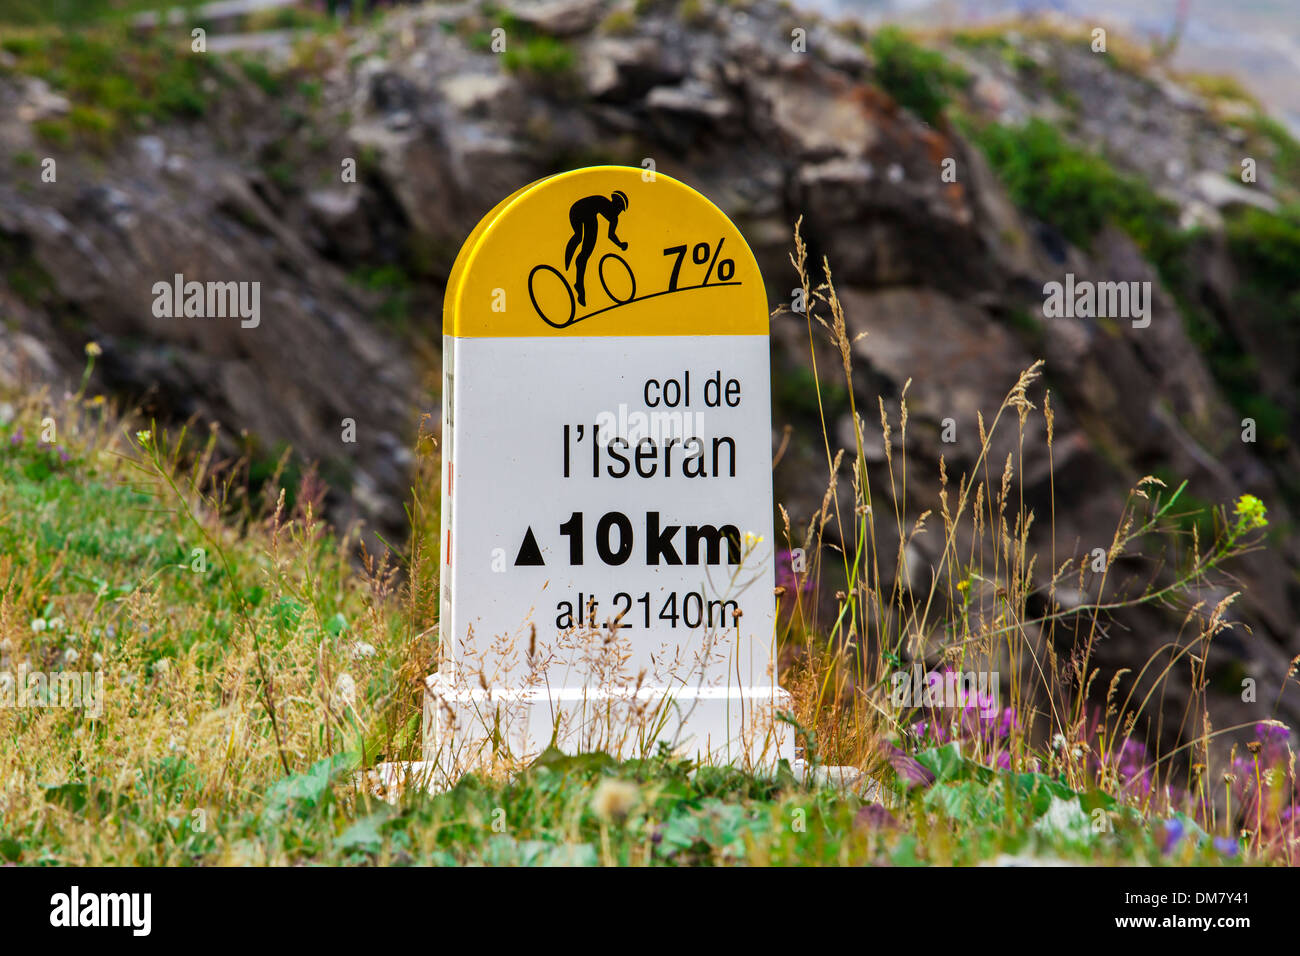 Itinéraire cycliste panneau indiquant la distance et la déclivité sur la route jusqu'au col de l'Iseran, Savoie, France. Banque D'Images